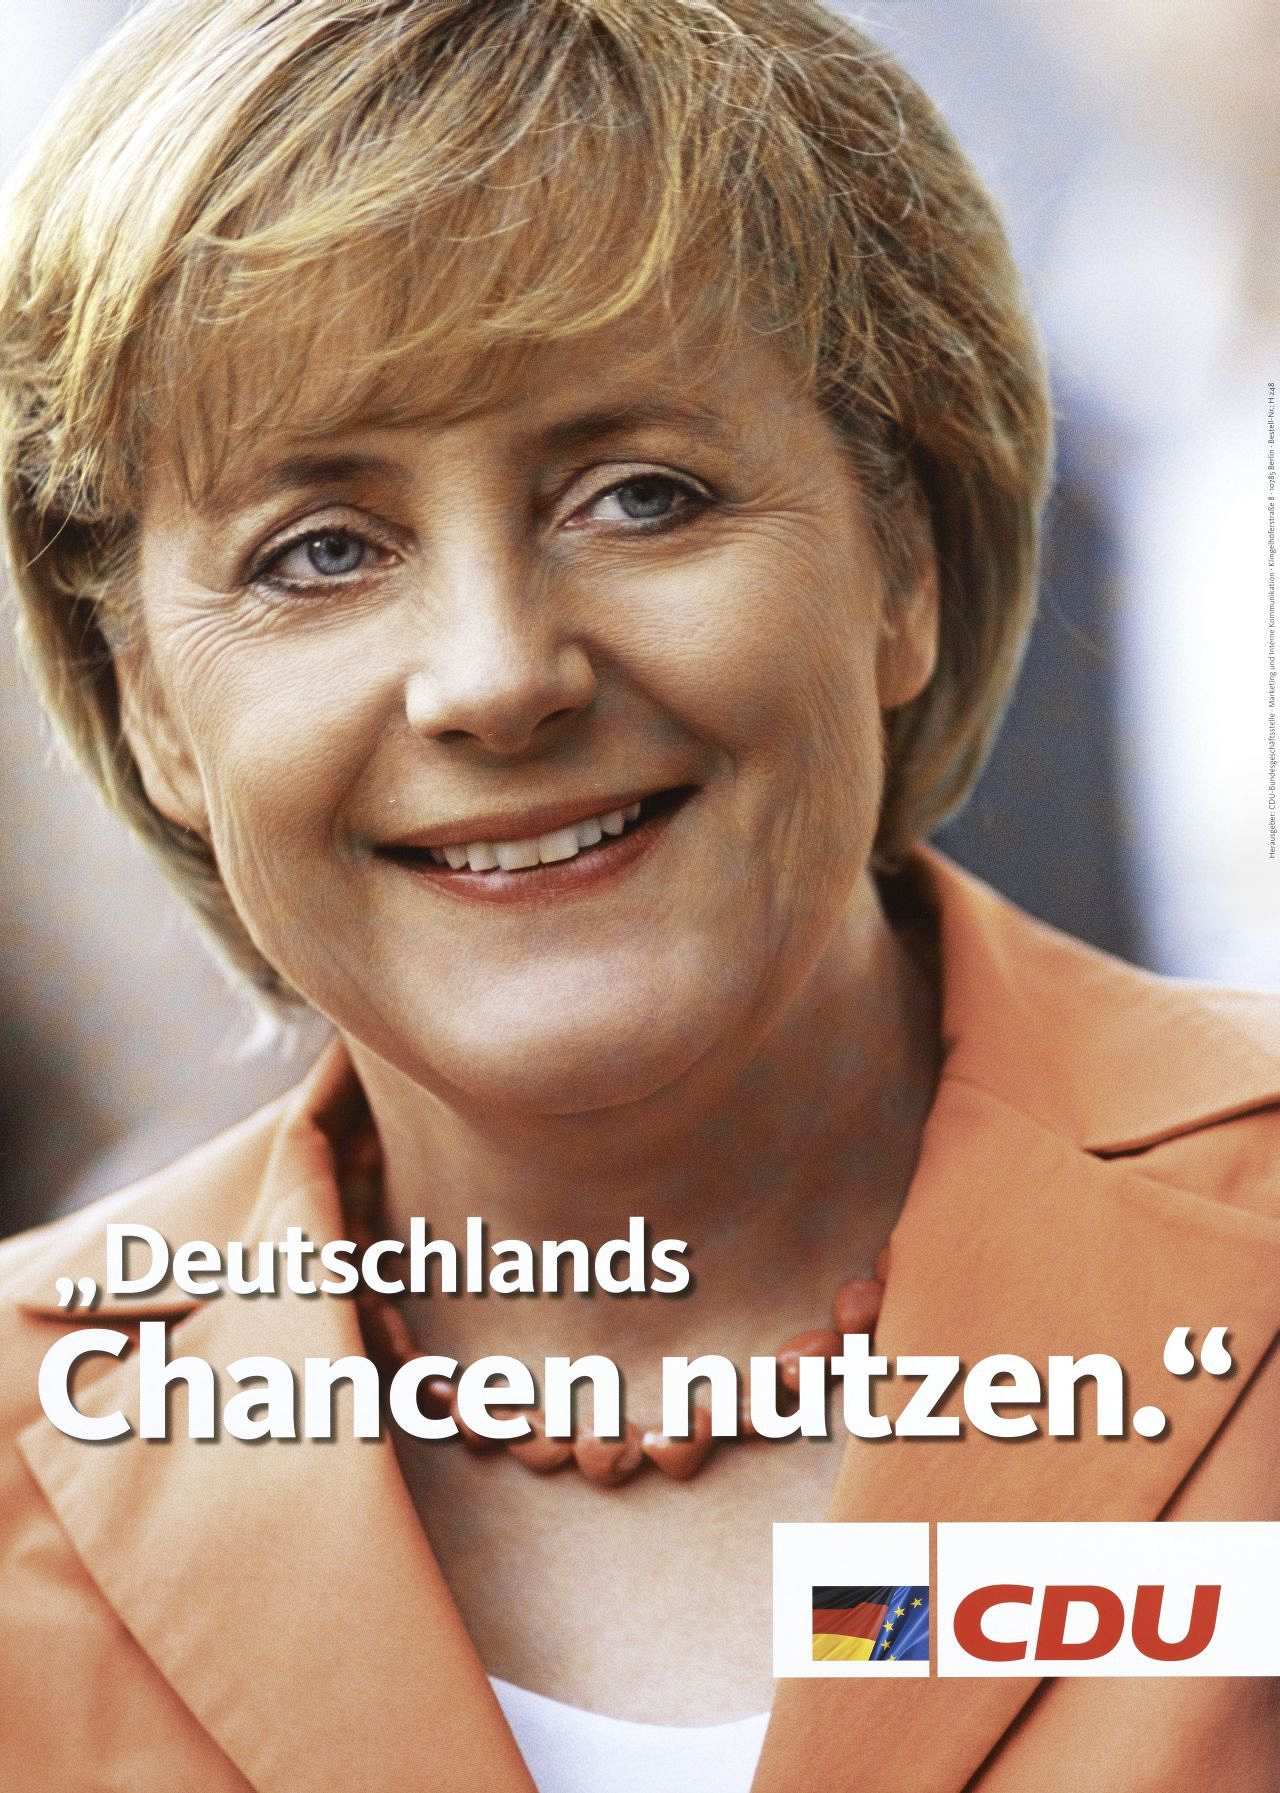 Wahlplakat der CDU zur Bundestagswahl 2005 mit Kanzlerkandidatin Angela Merkel und dem Slogan 